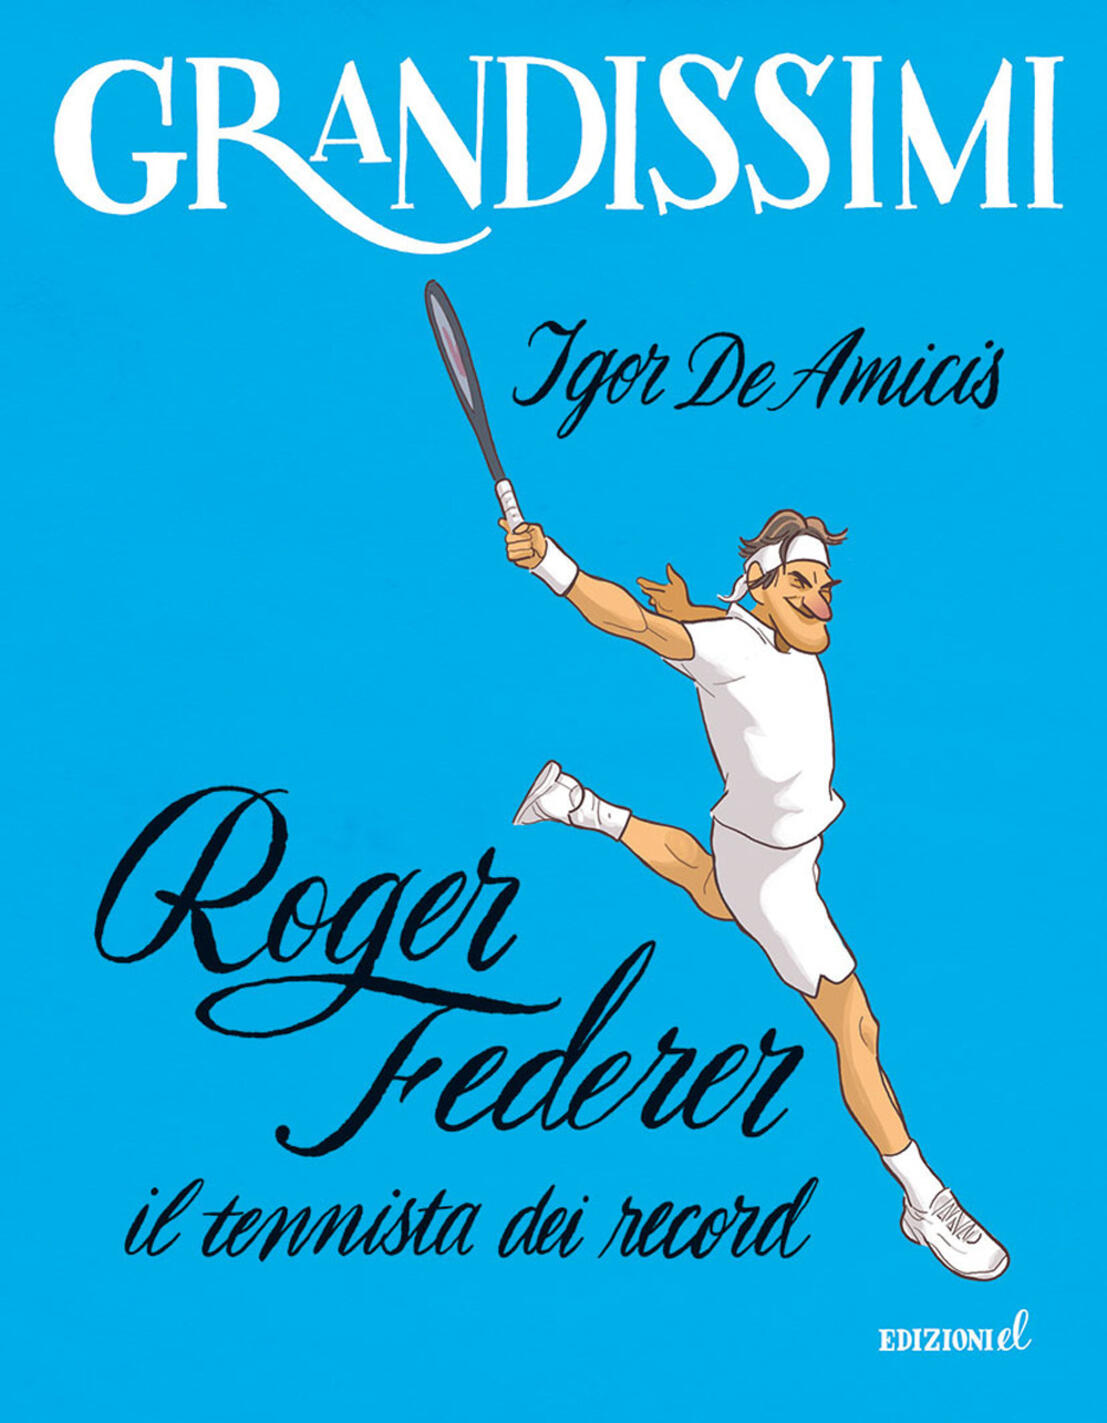 Roger Federer, il tennista dei record. E